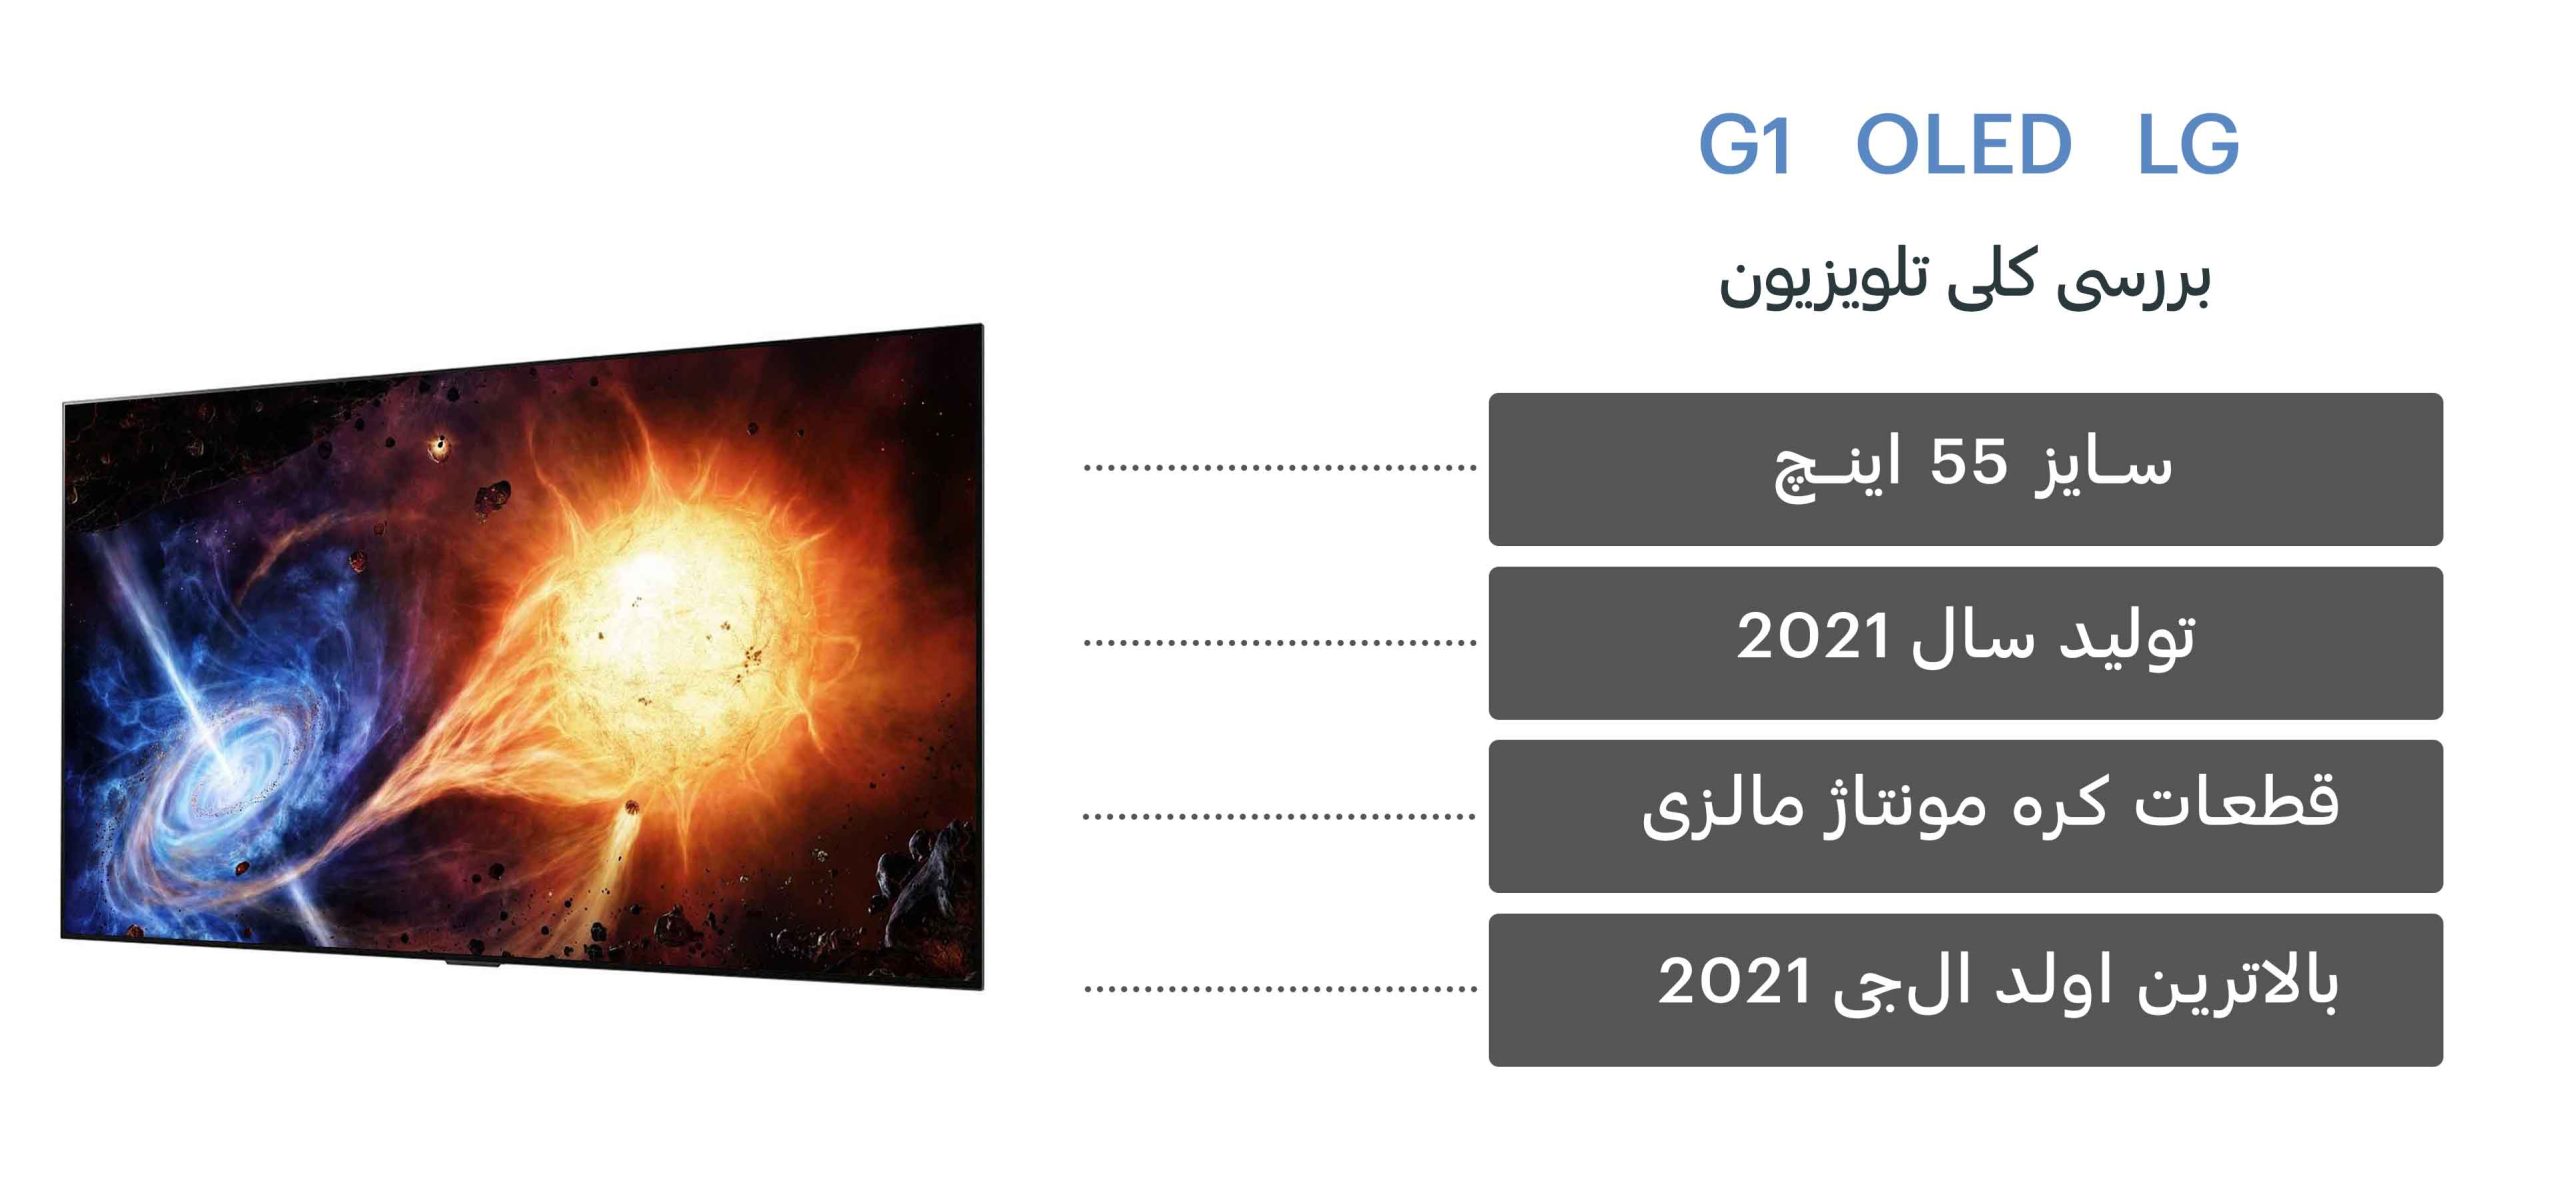 بررسی کلی تلویزیون G1 ال جی OLED